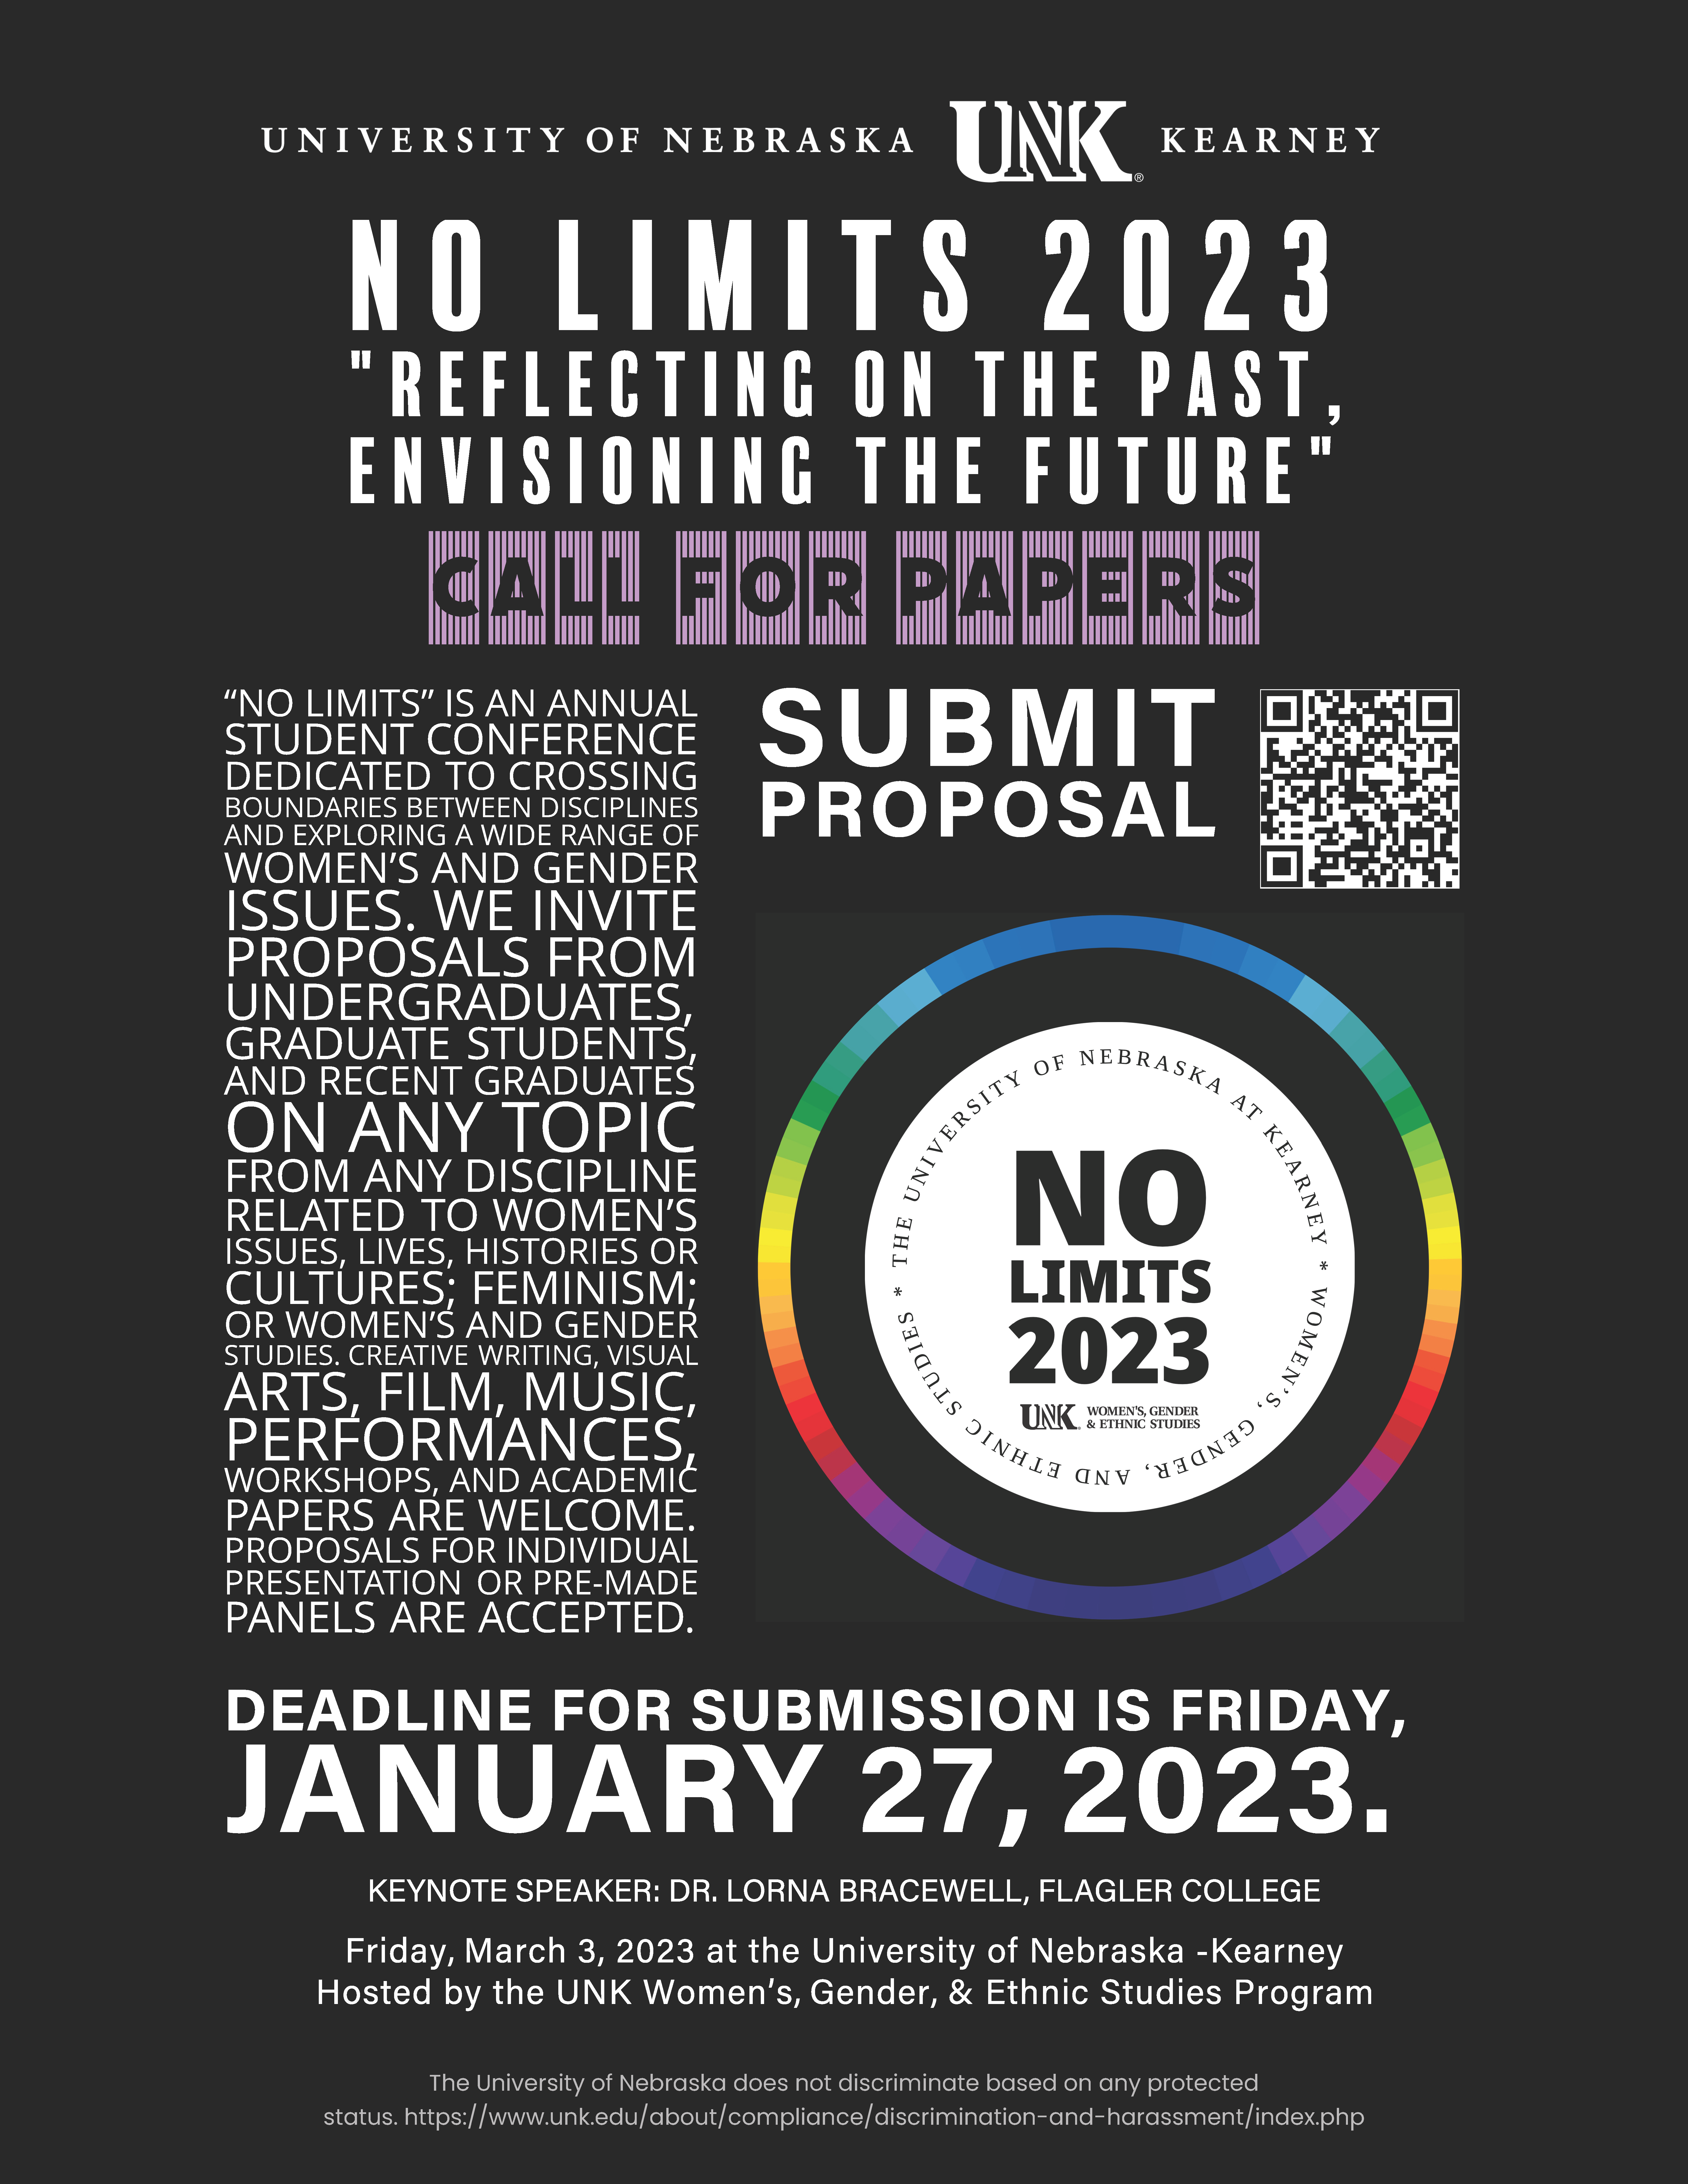 No Limits 2023 at UNK